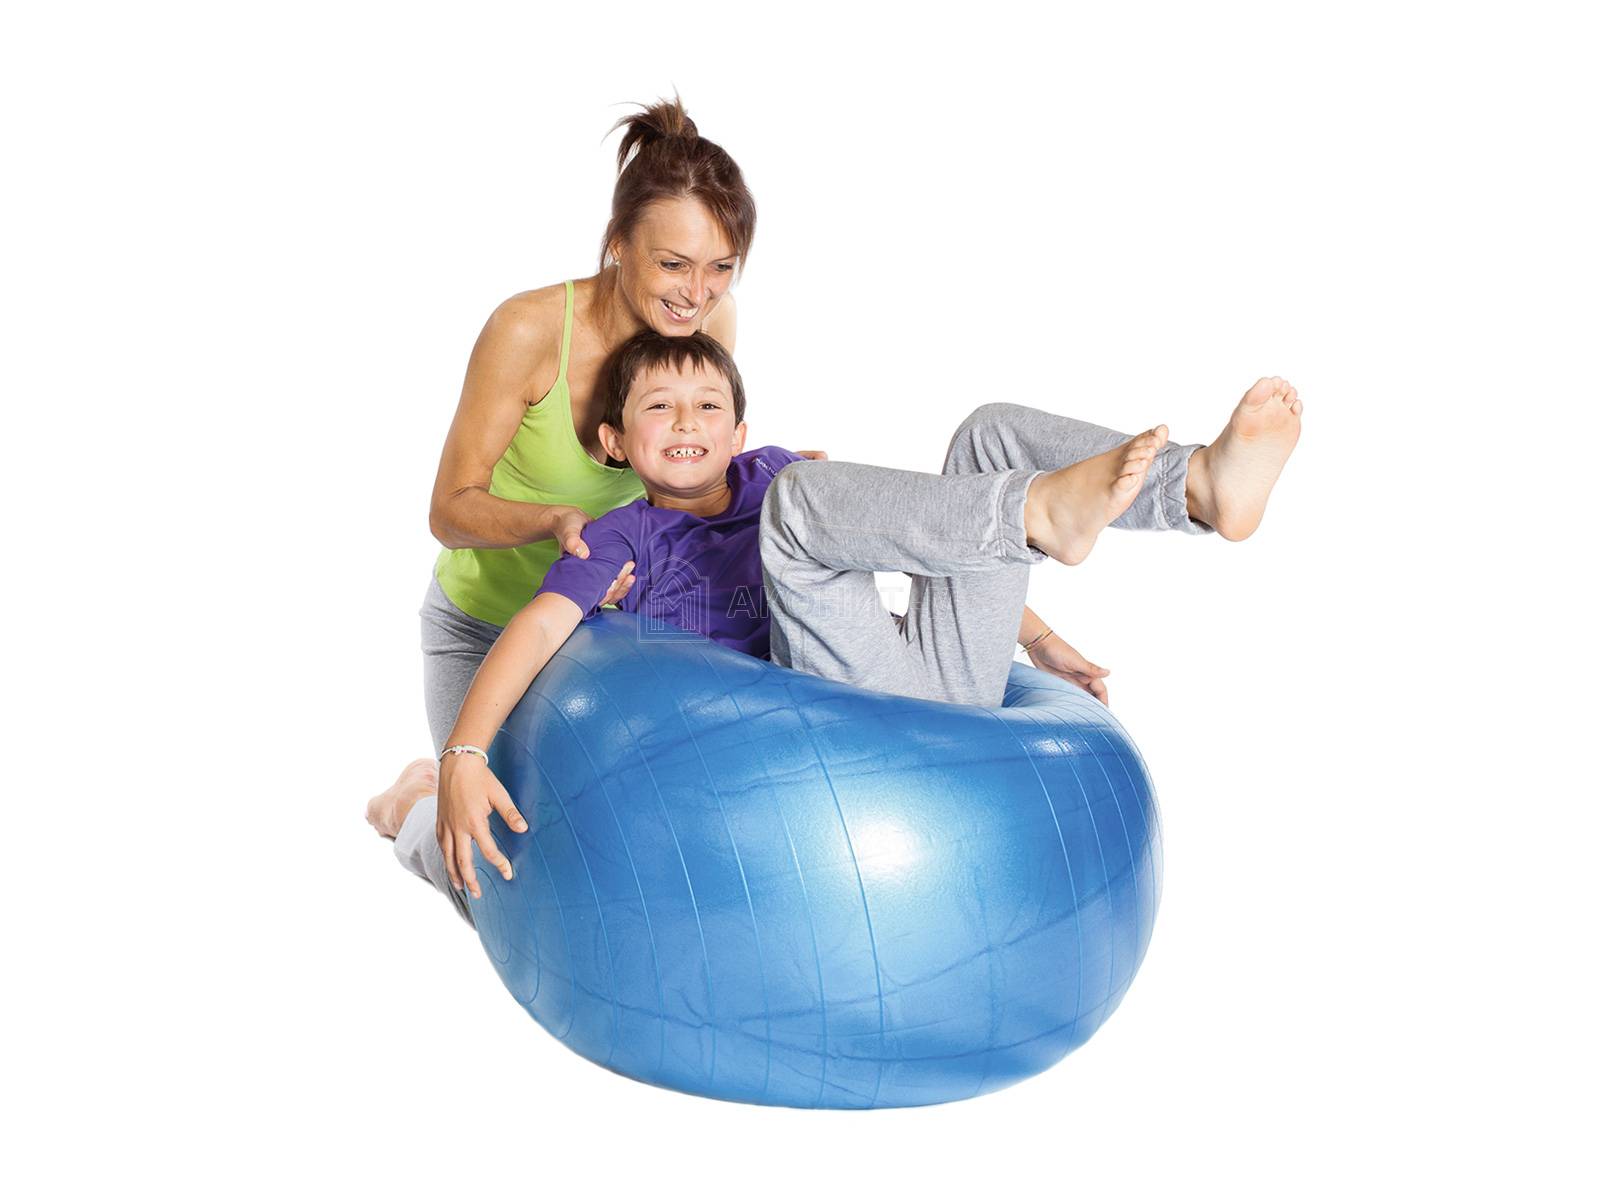 Мяч гимнастический для фитнеса "Боди" (фитбол), диам. 55 см, красный